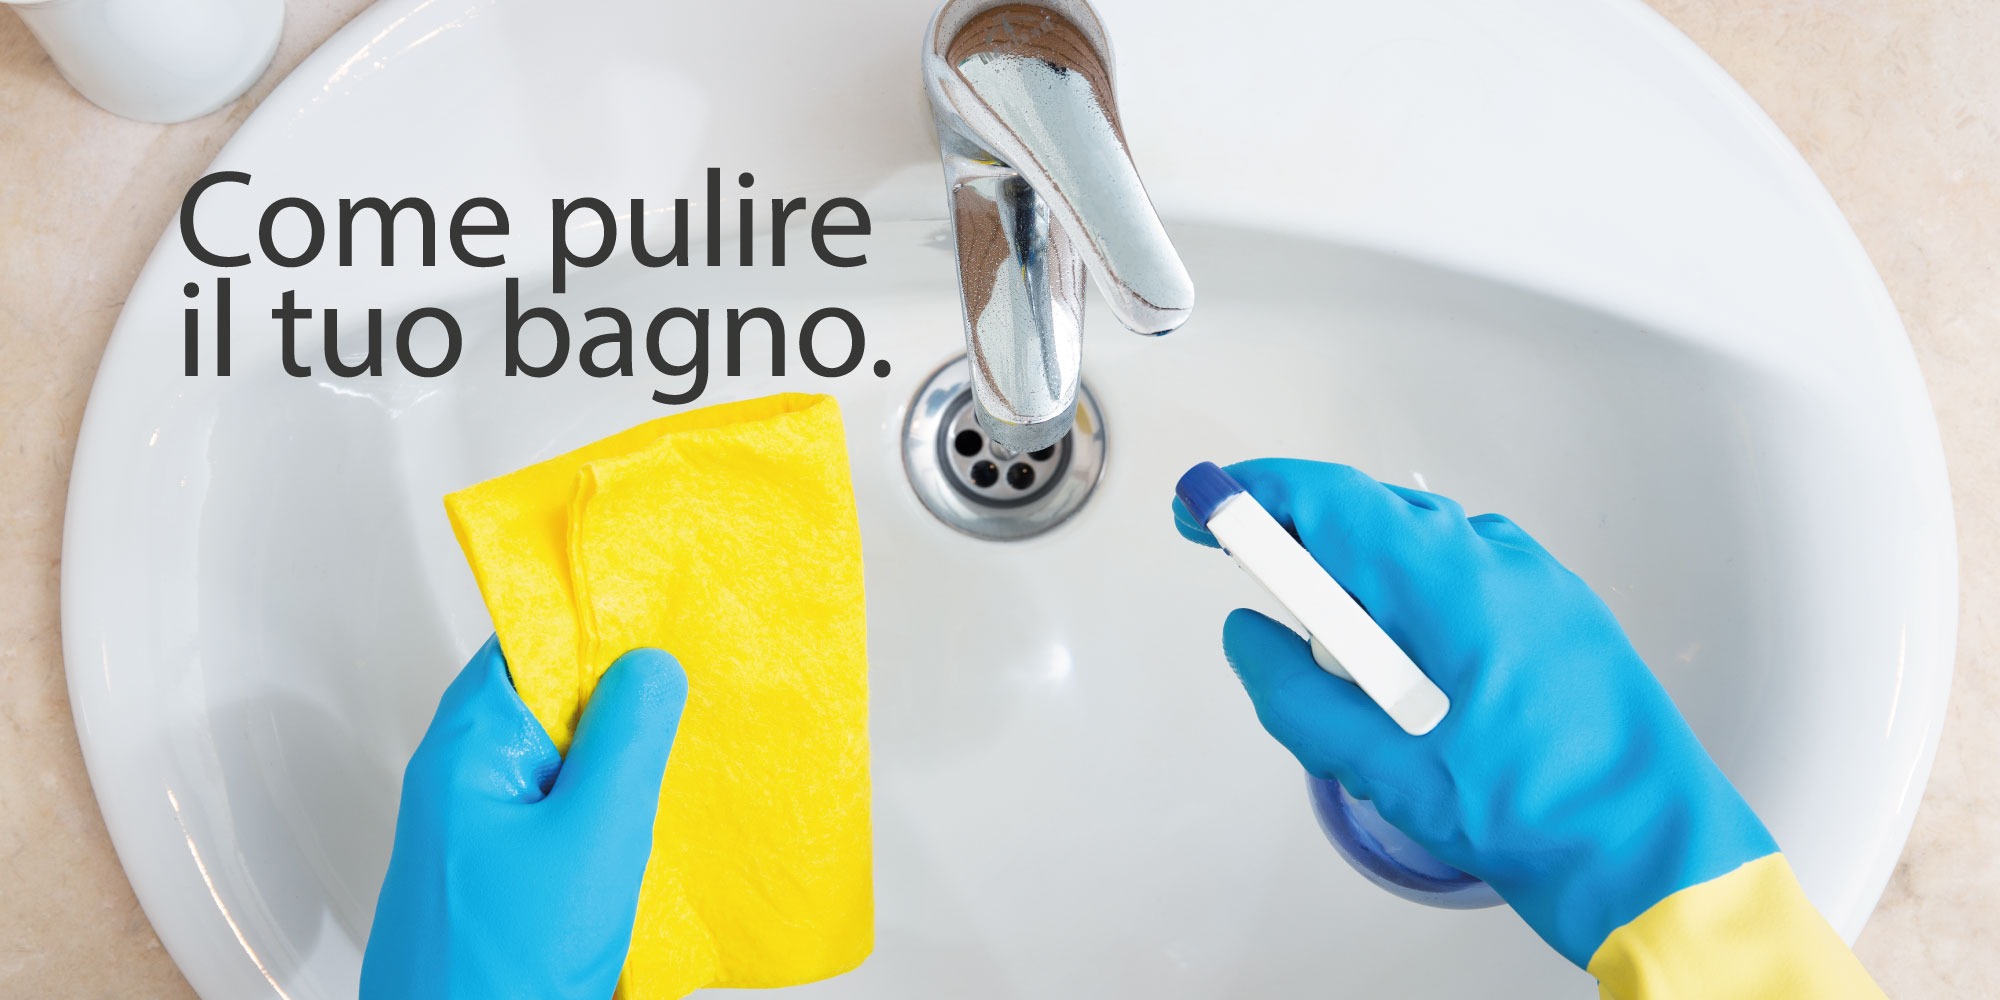 Pulire la rubinetteria del bagno: come eliminare al meglio il calcare?